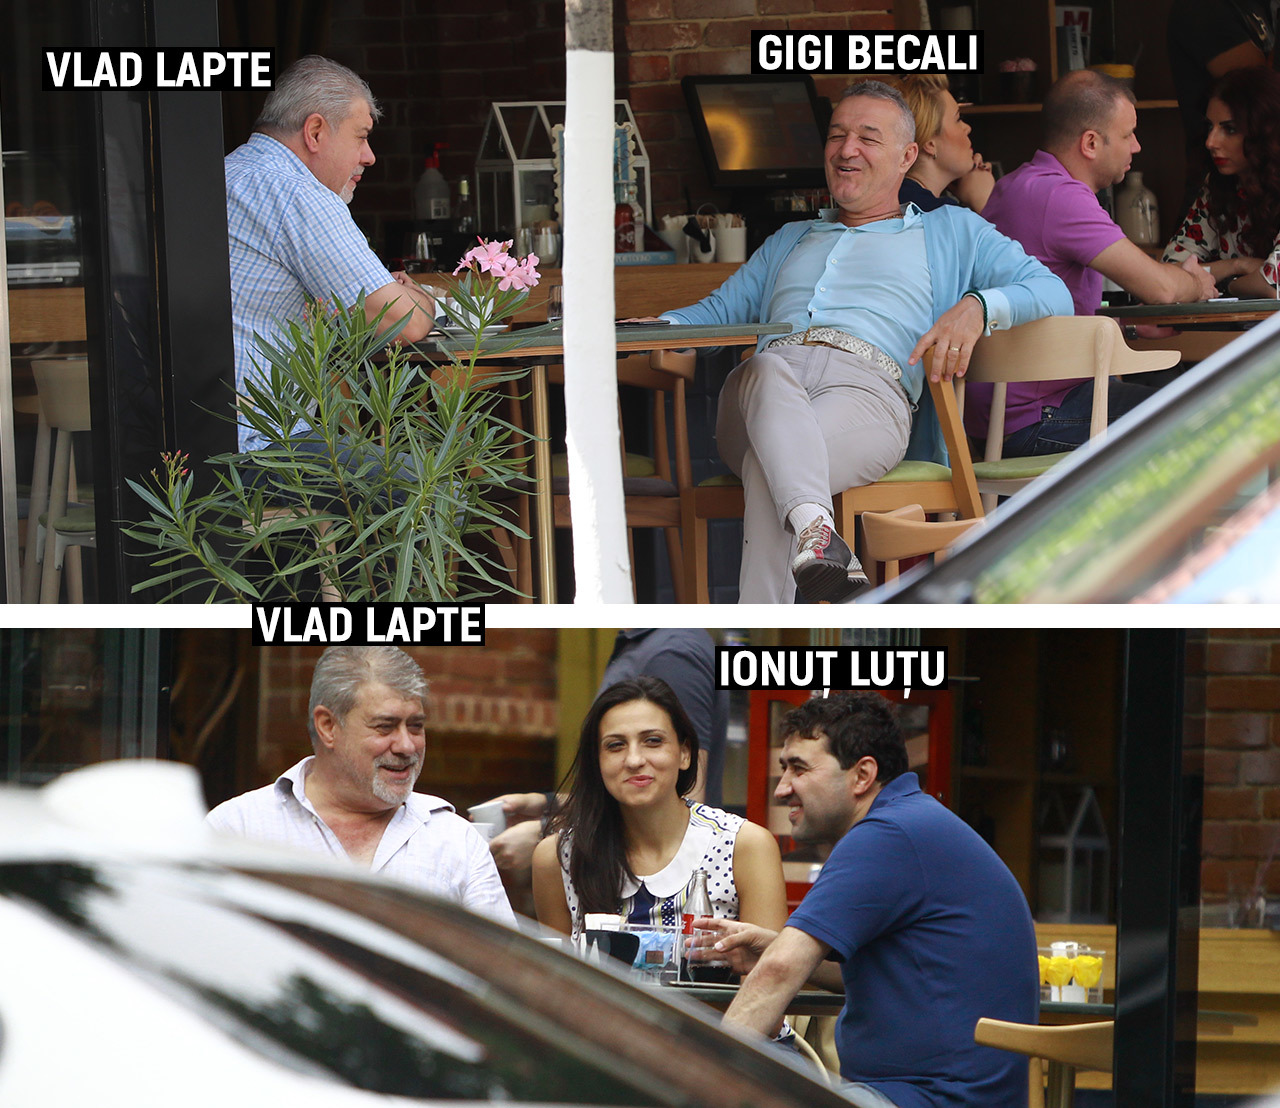 Atât Gigi Becali, cât şi Luţu au râs în hohote cu Vlad Lapte